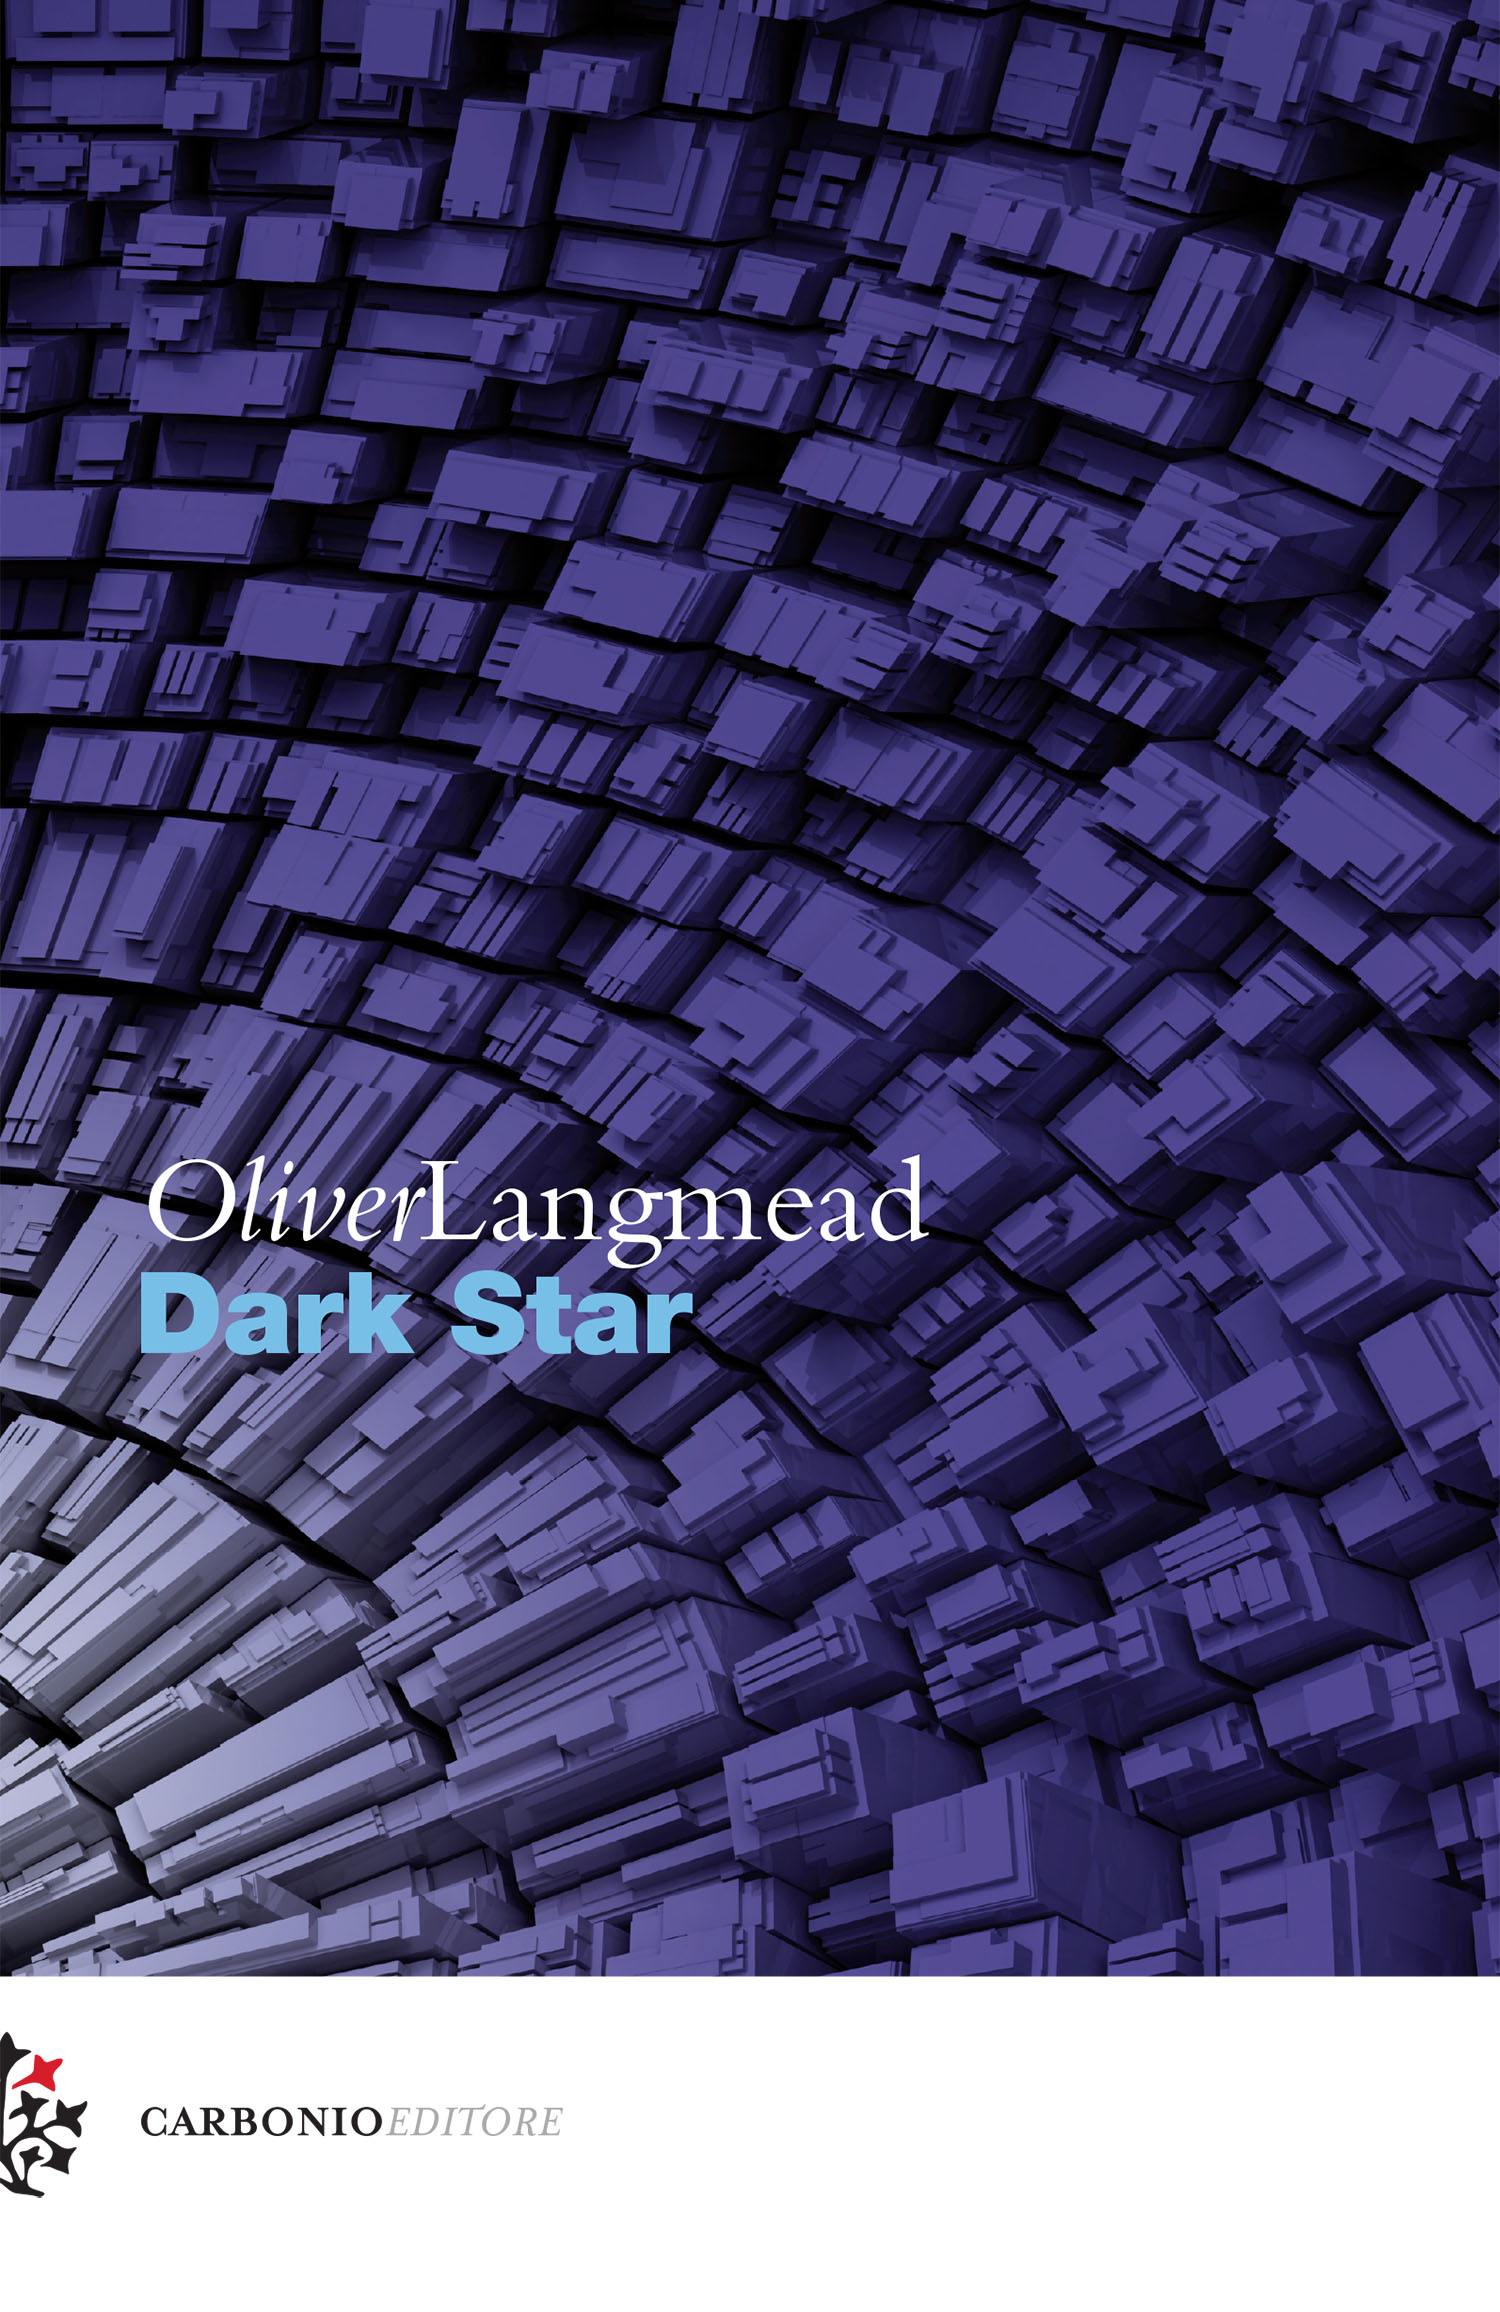 RECENSIONE: “Dark Star” di Oliver Langmead (+ Intervista)